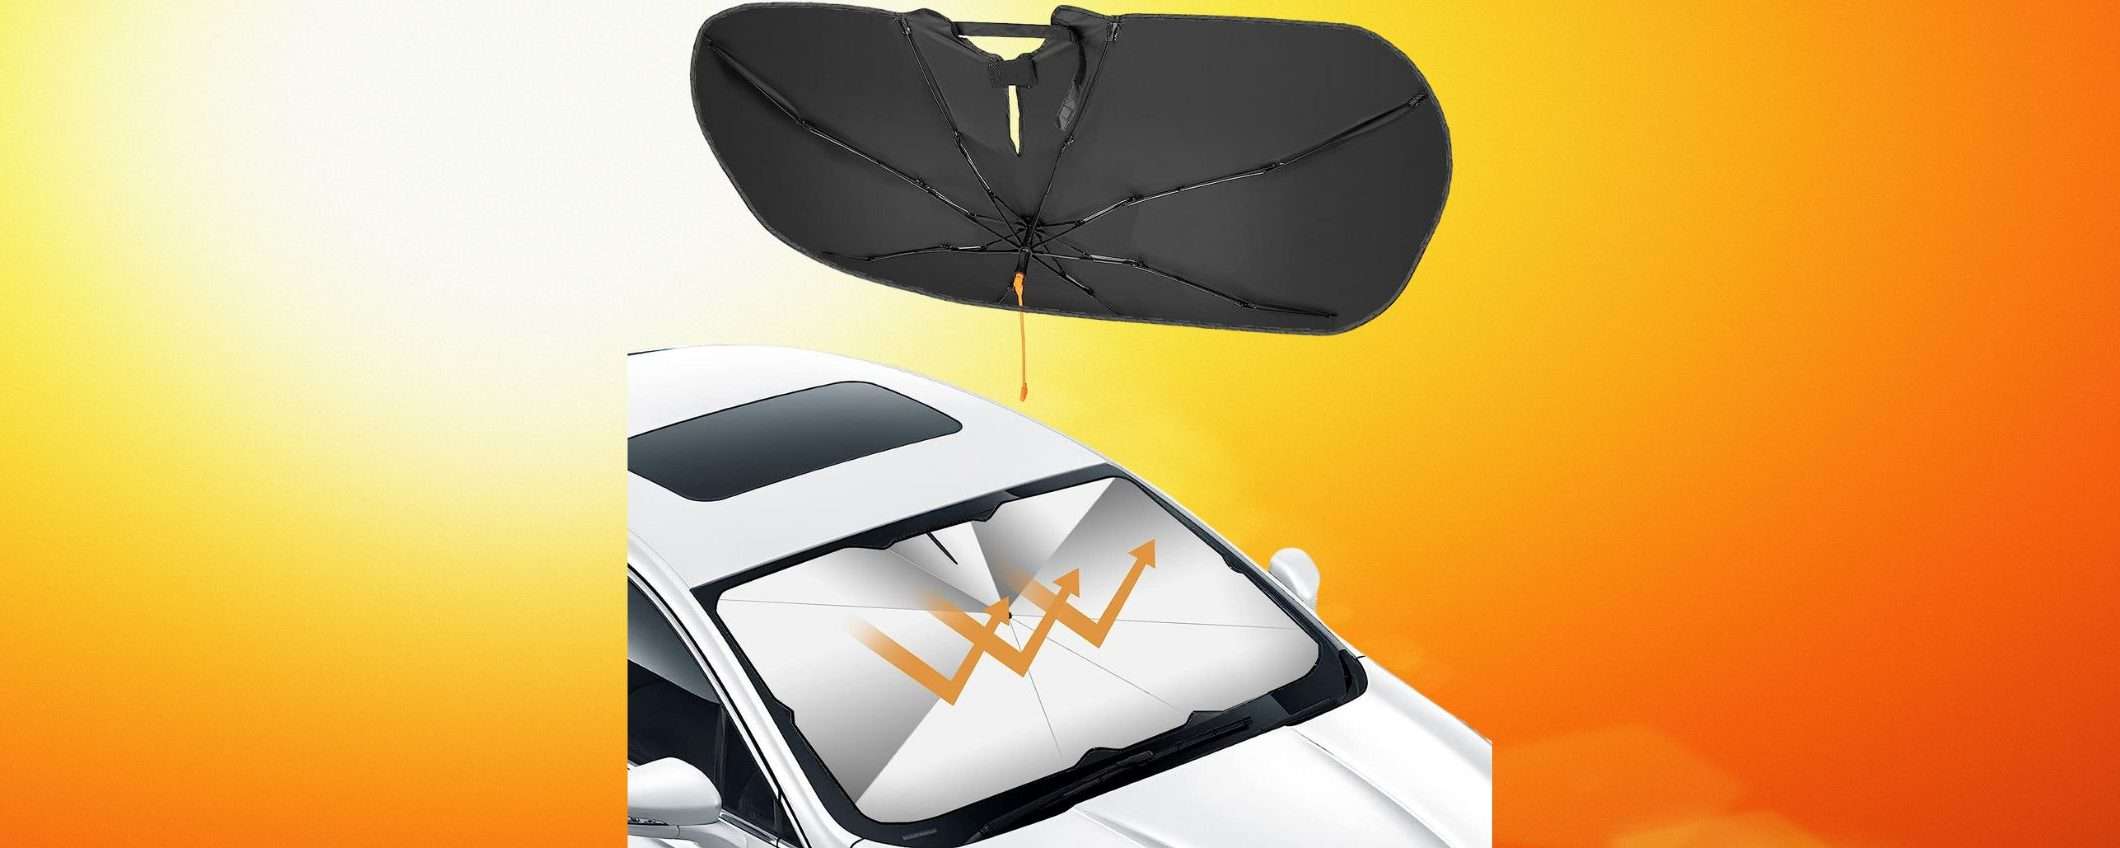 Il parasole per auto più venduto è TORNATO in sconto: auto sempre FRESCA